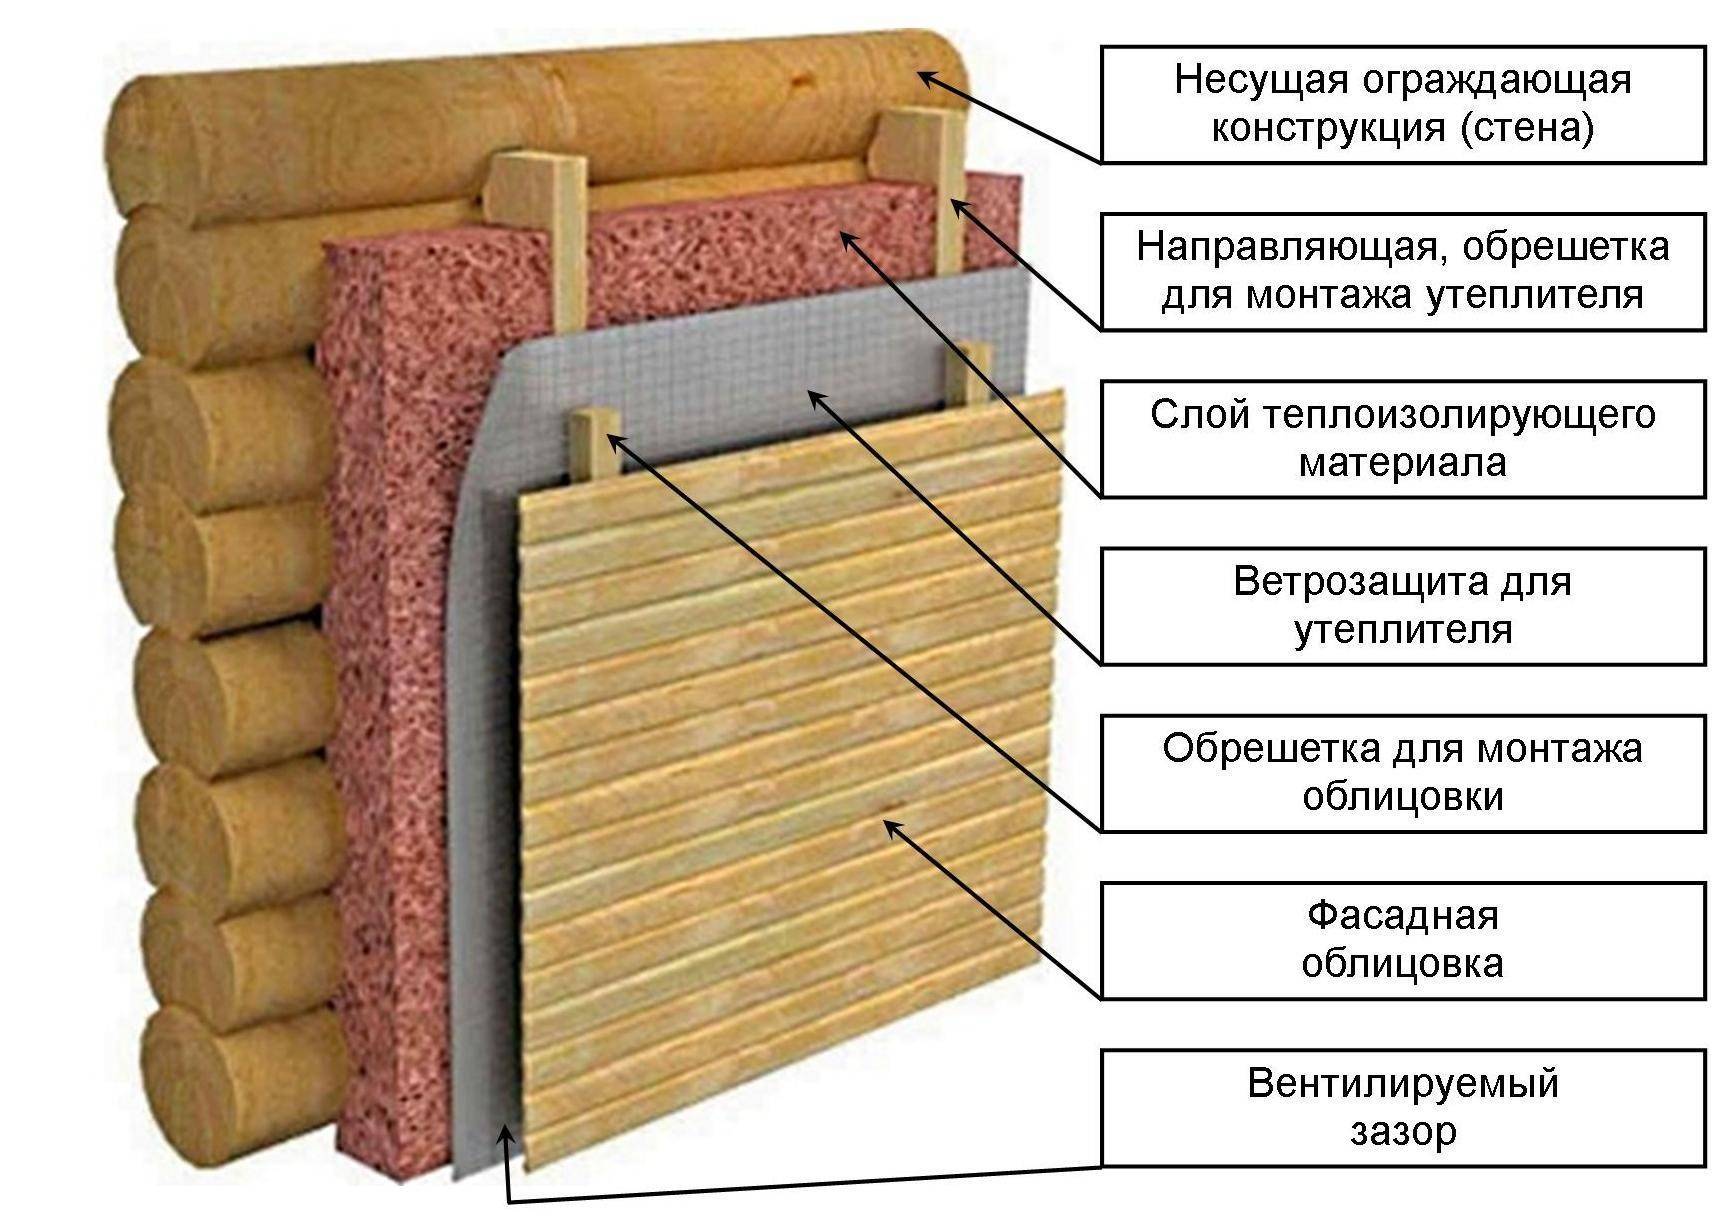 Как утеплить баню изнутри в зависимости от типа конструкции